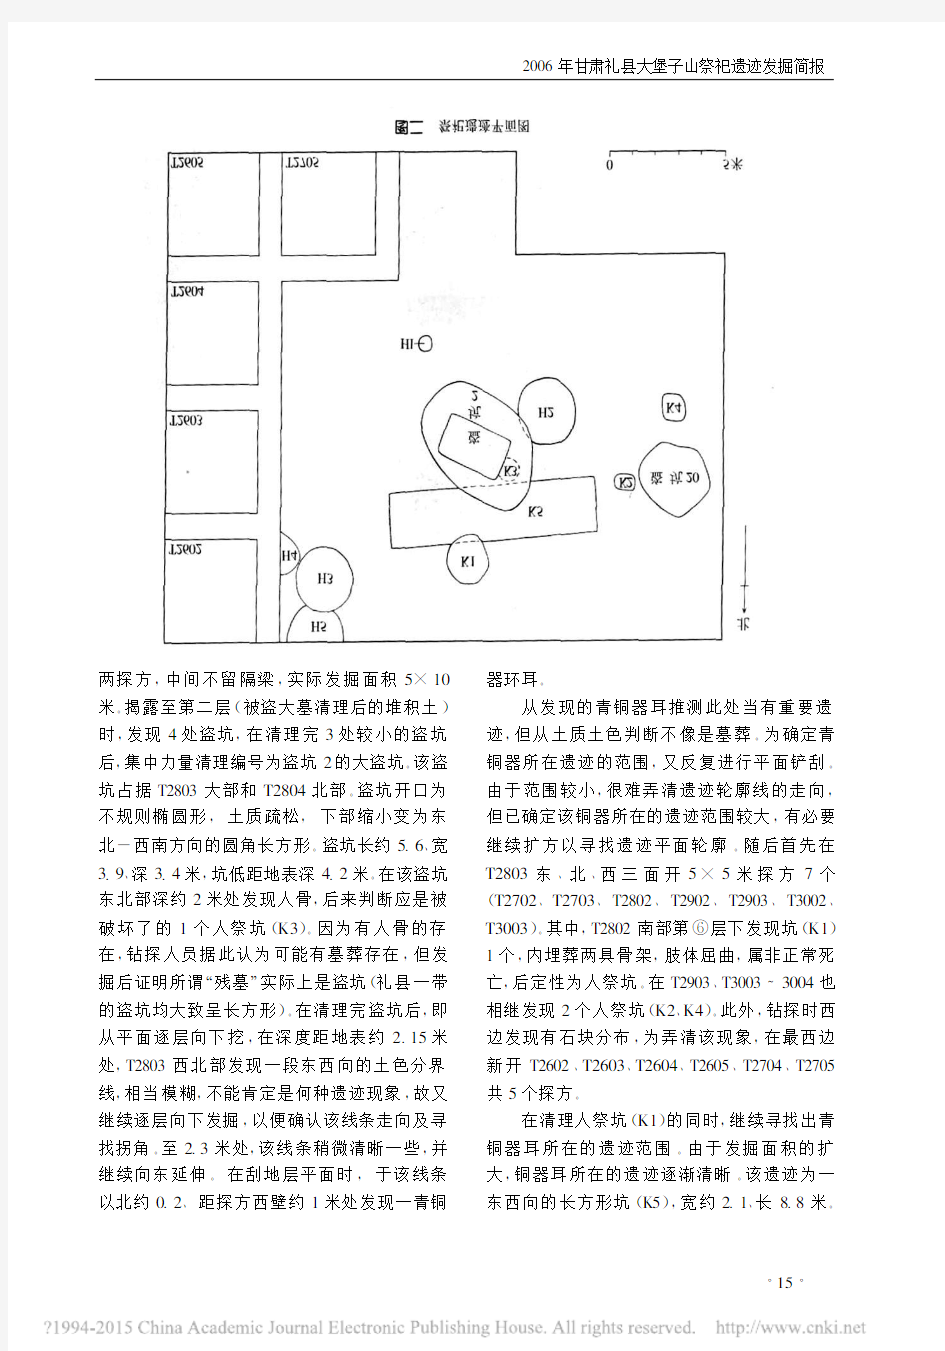 《文物》杂志2008年第11期--2006年甘肃礼县大堡子山祭祀遗迹发掘简报_王刚